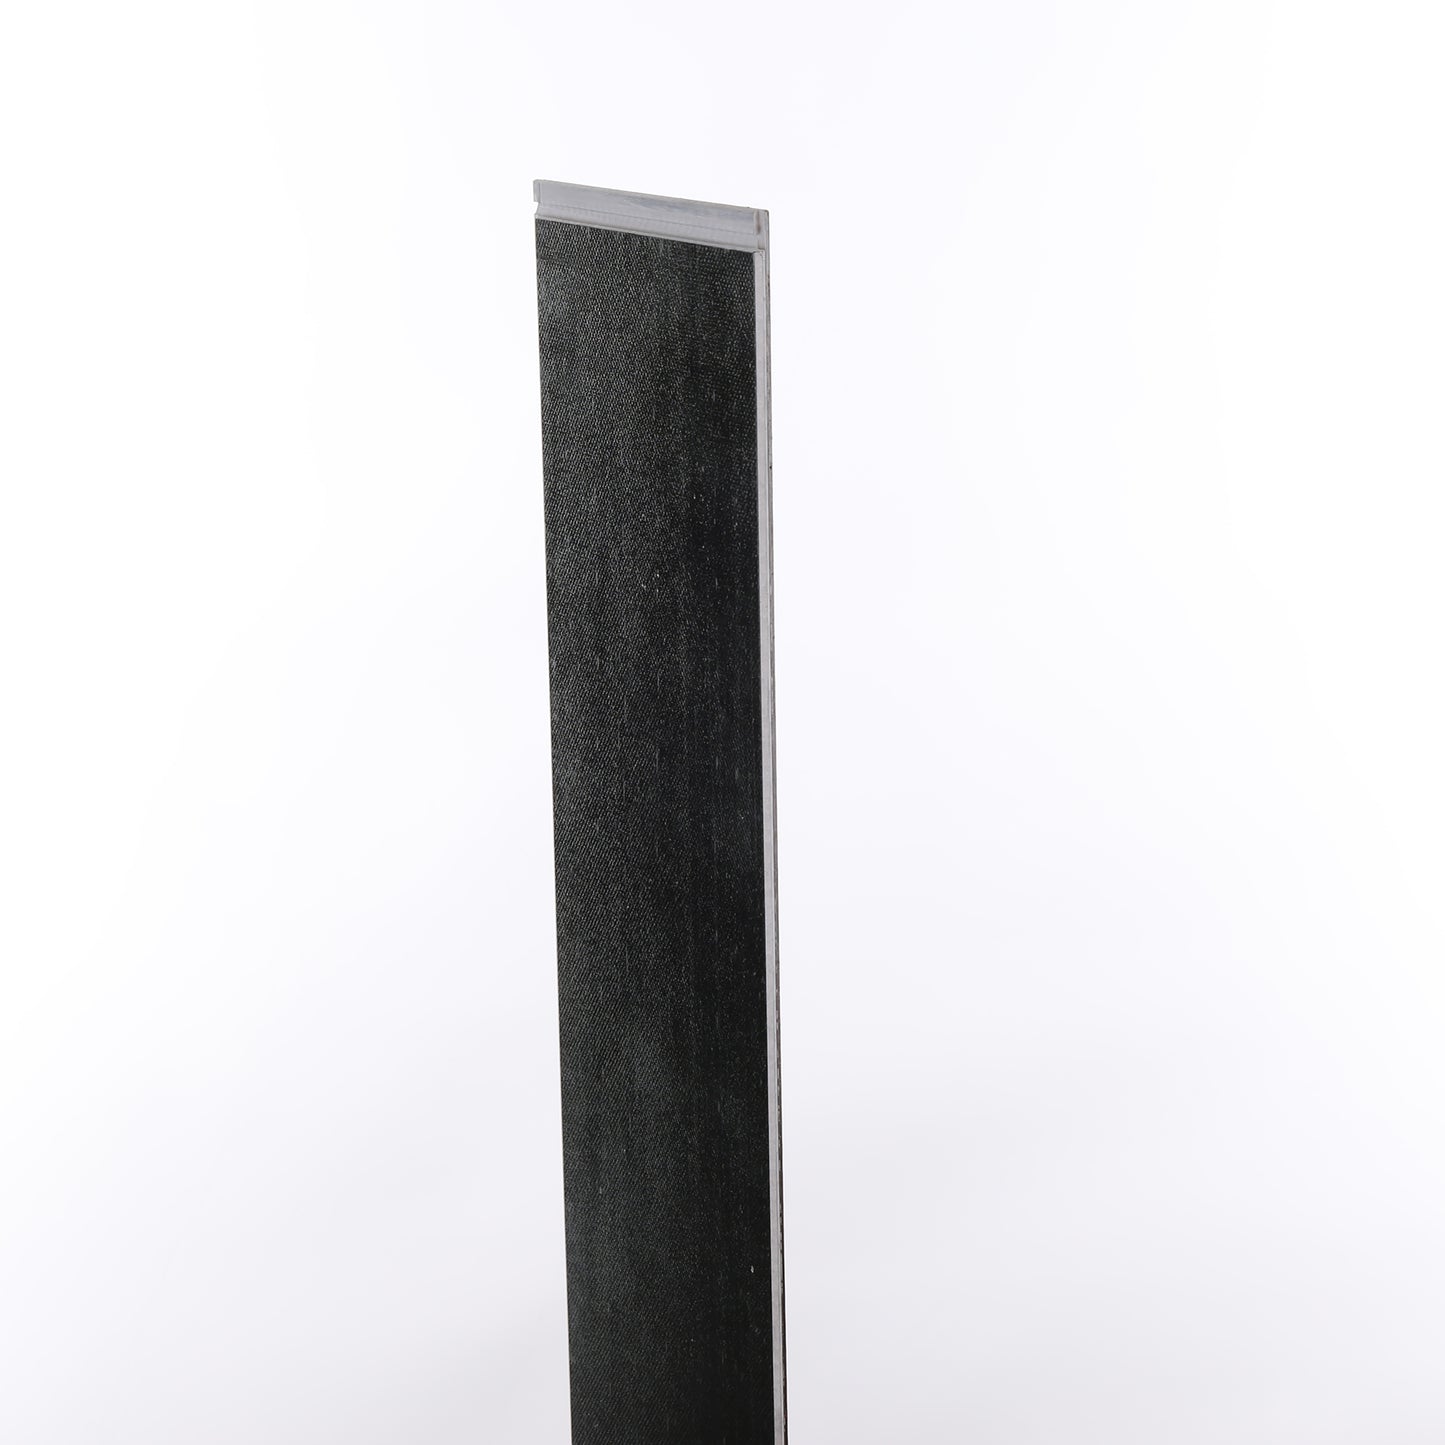 7mm Cognac Waterproof Engineered Strand Bamboo Flooring 5.12 in. Wide x 36.22 in. Long